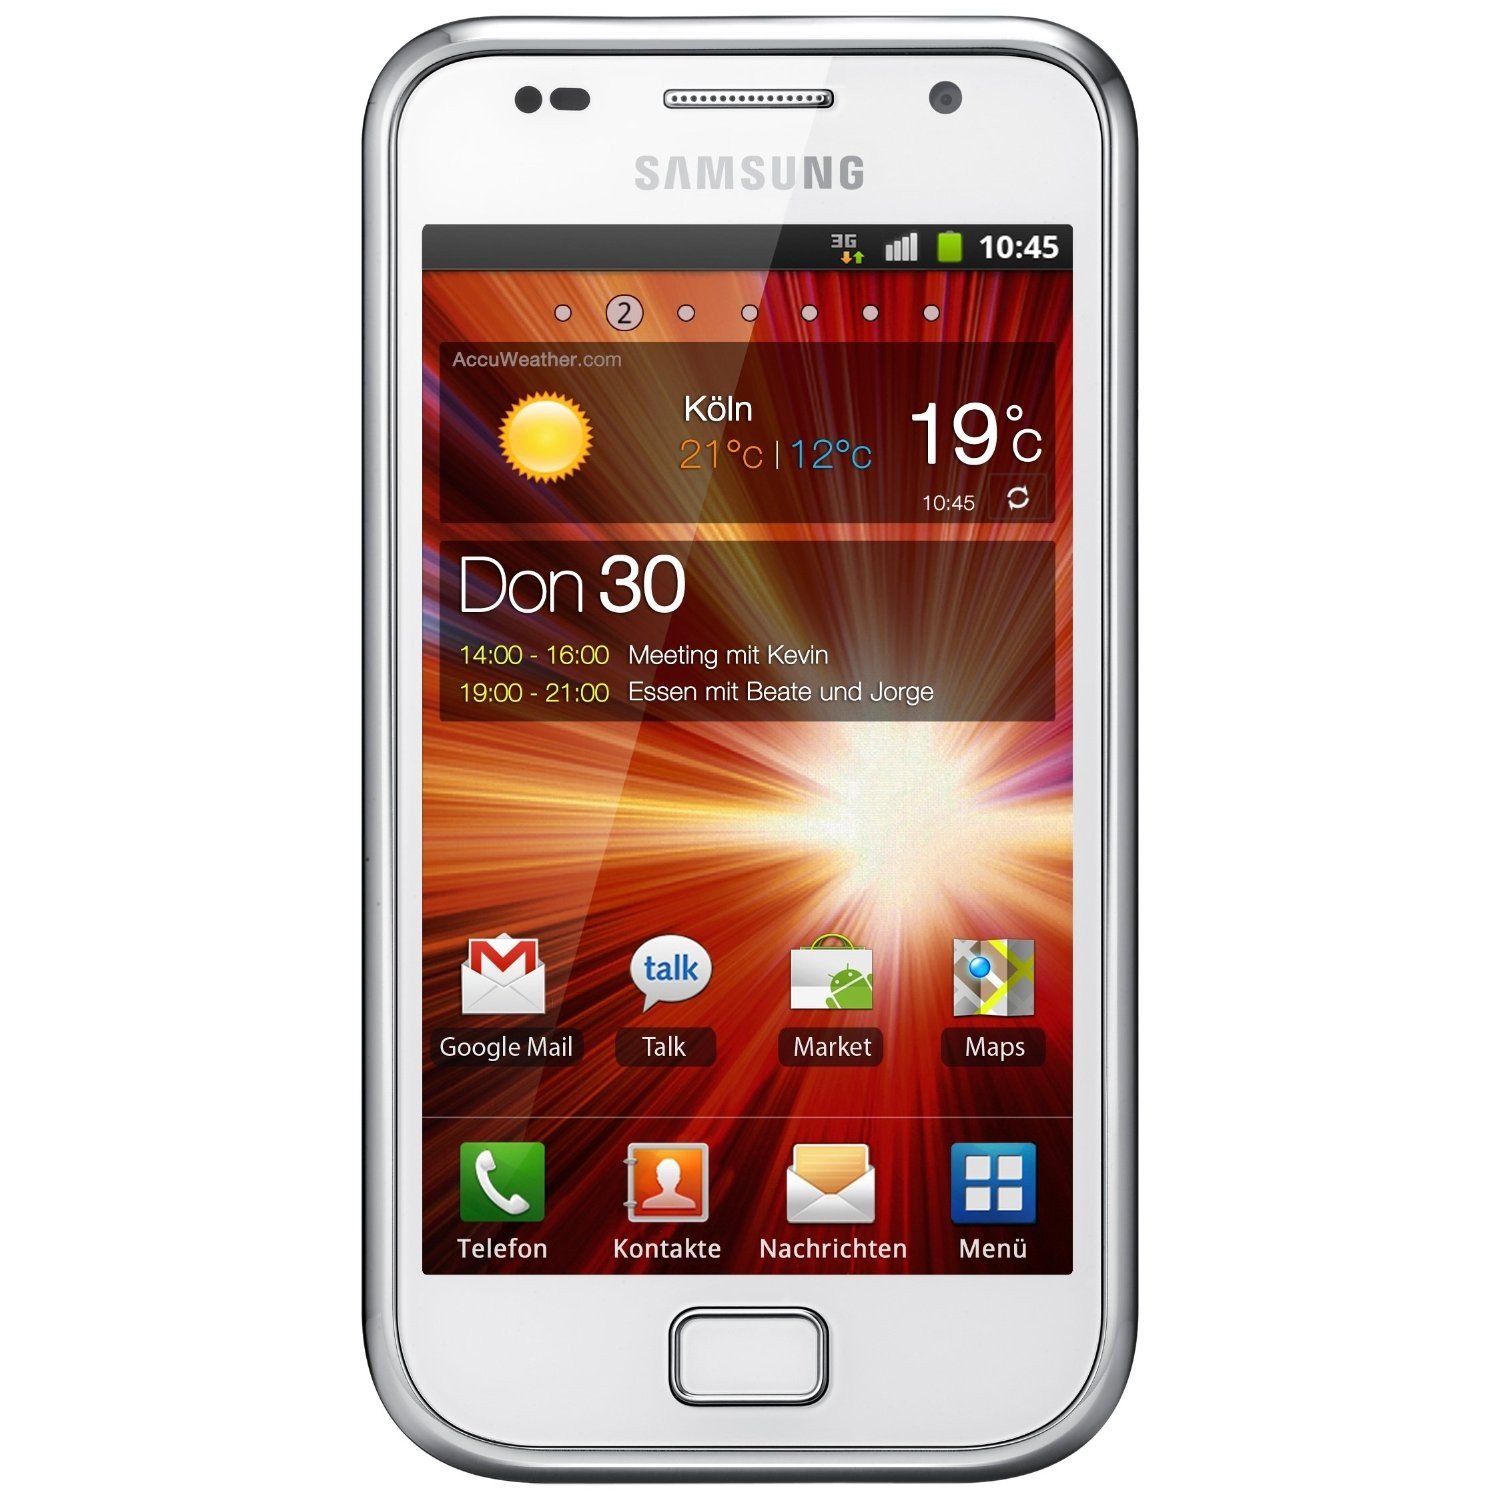 weekend moeilijk tevreden te krijgen Nacht Samsung I9001 Galaxy S Plus specs, review, release date - PhonesData